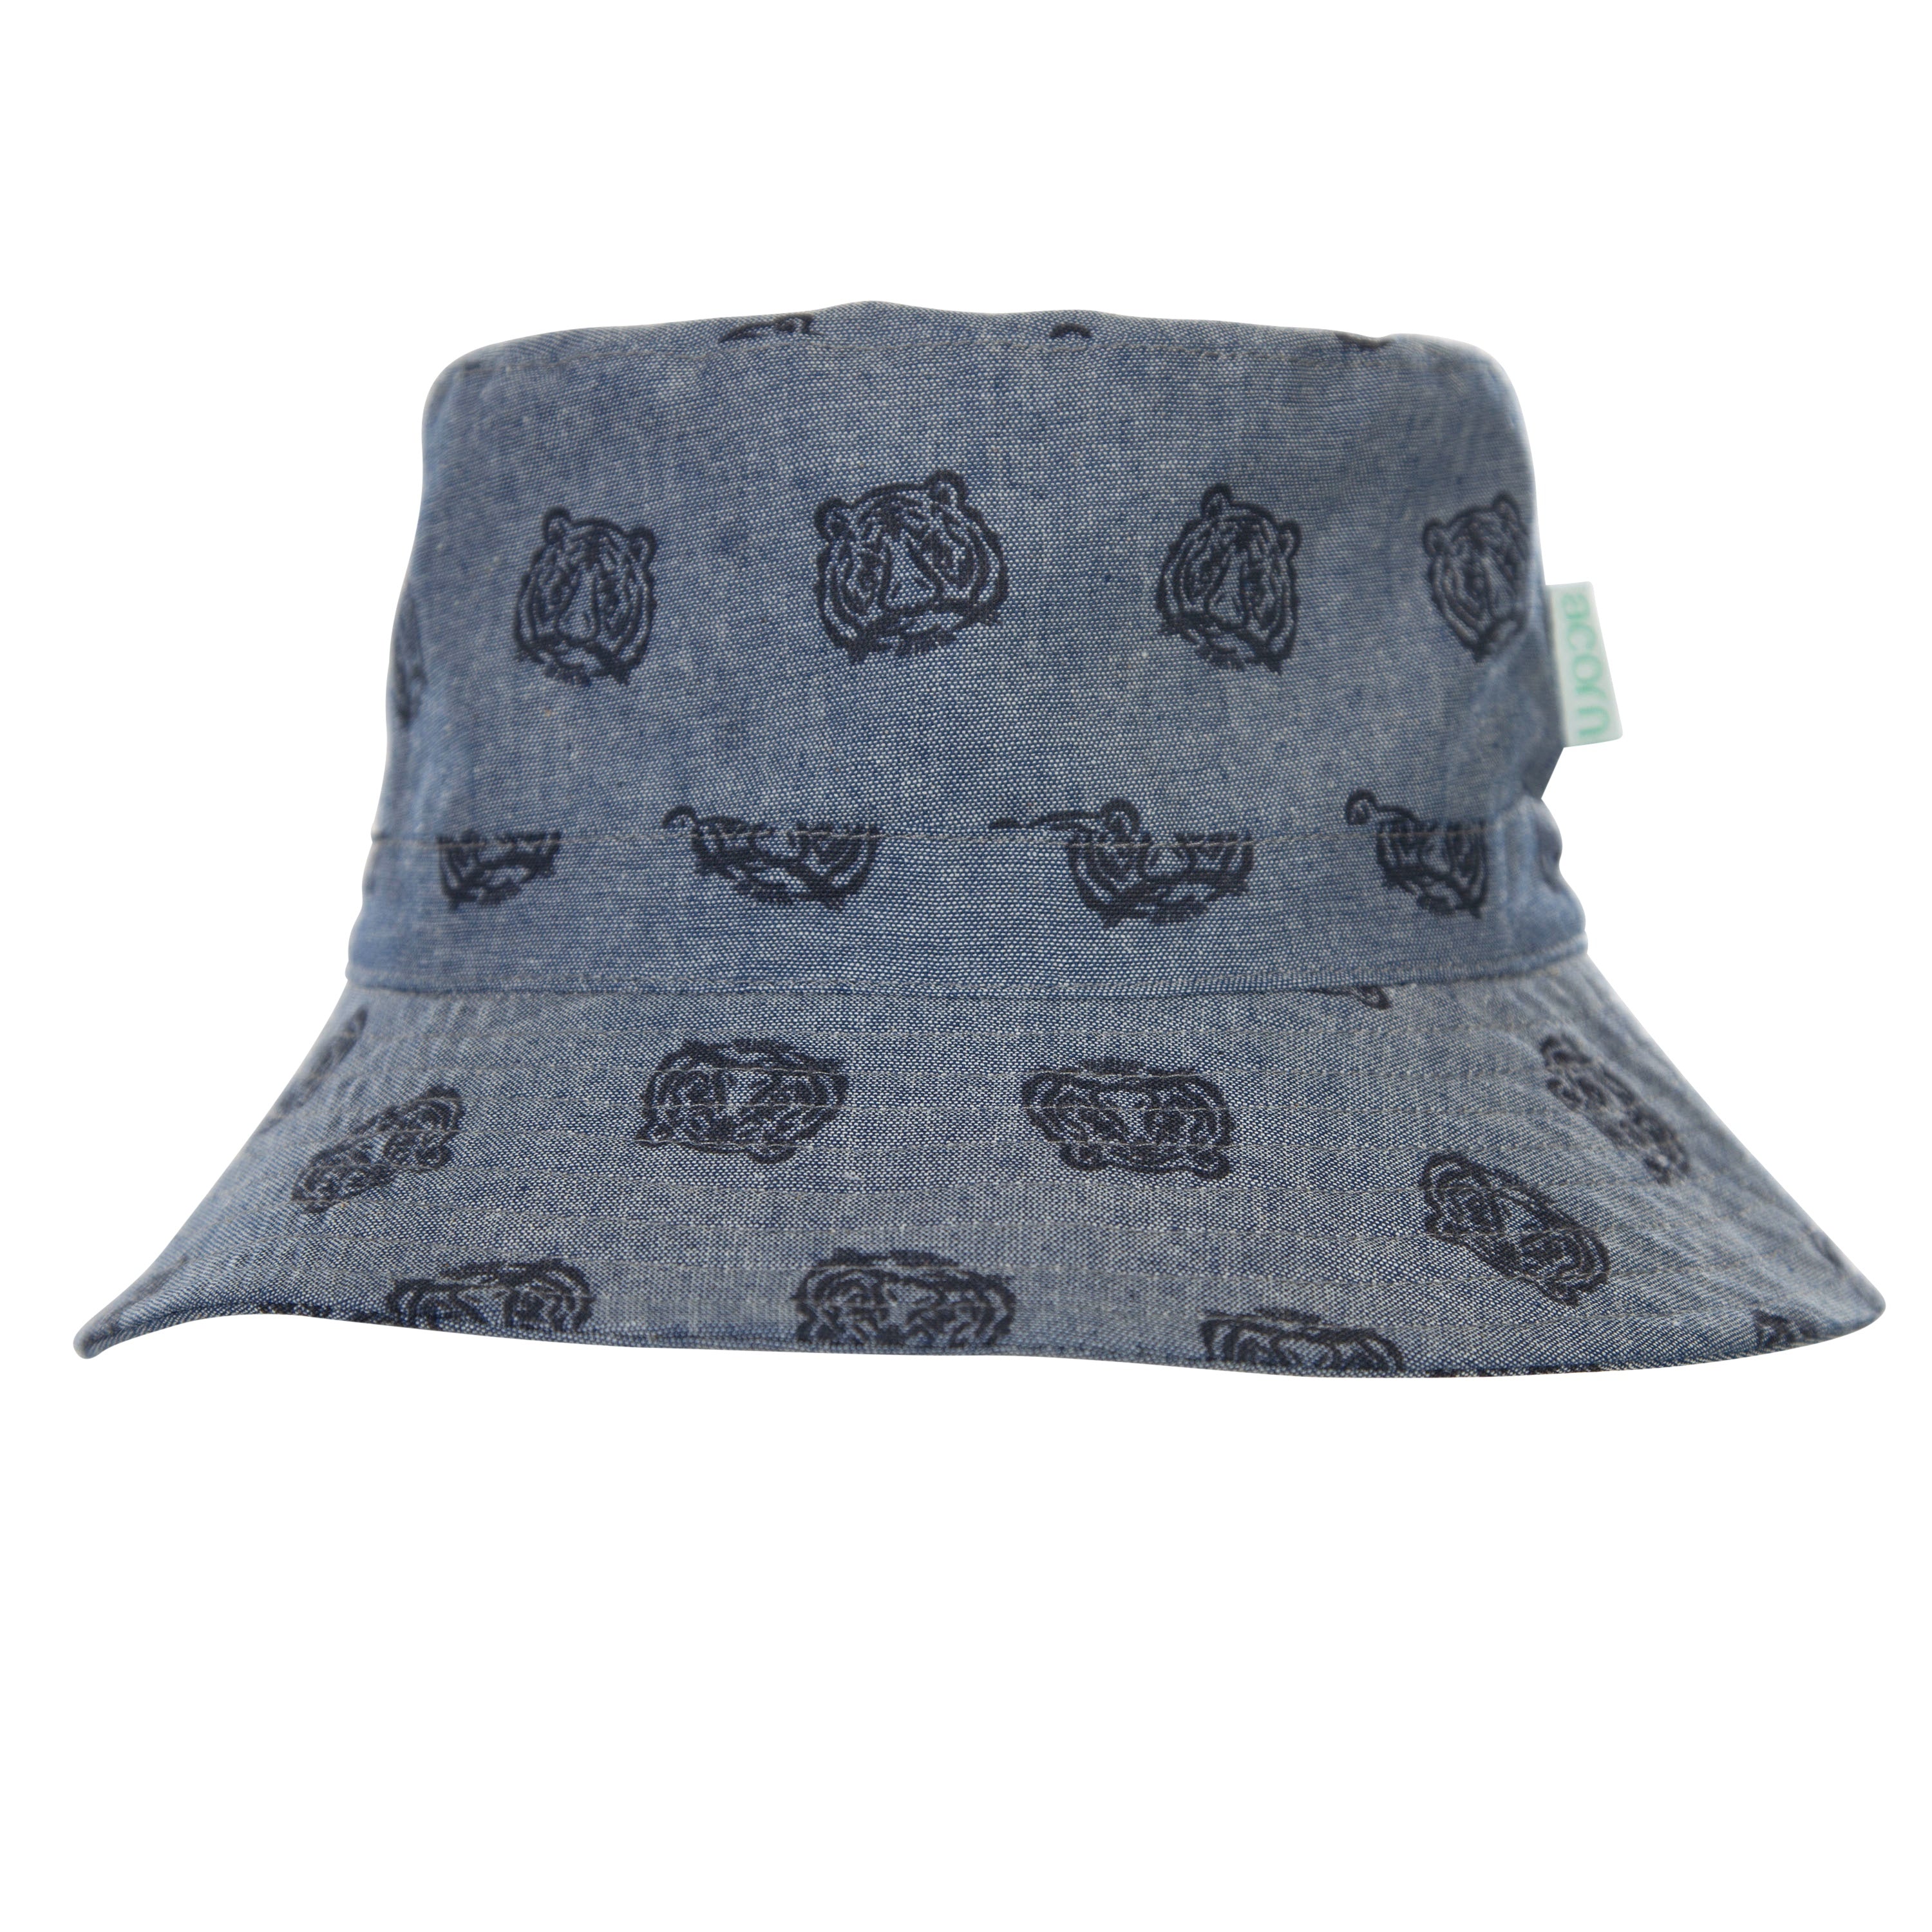 Acorn - Tiger Face Bucket Hat